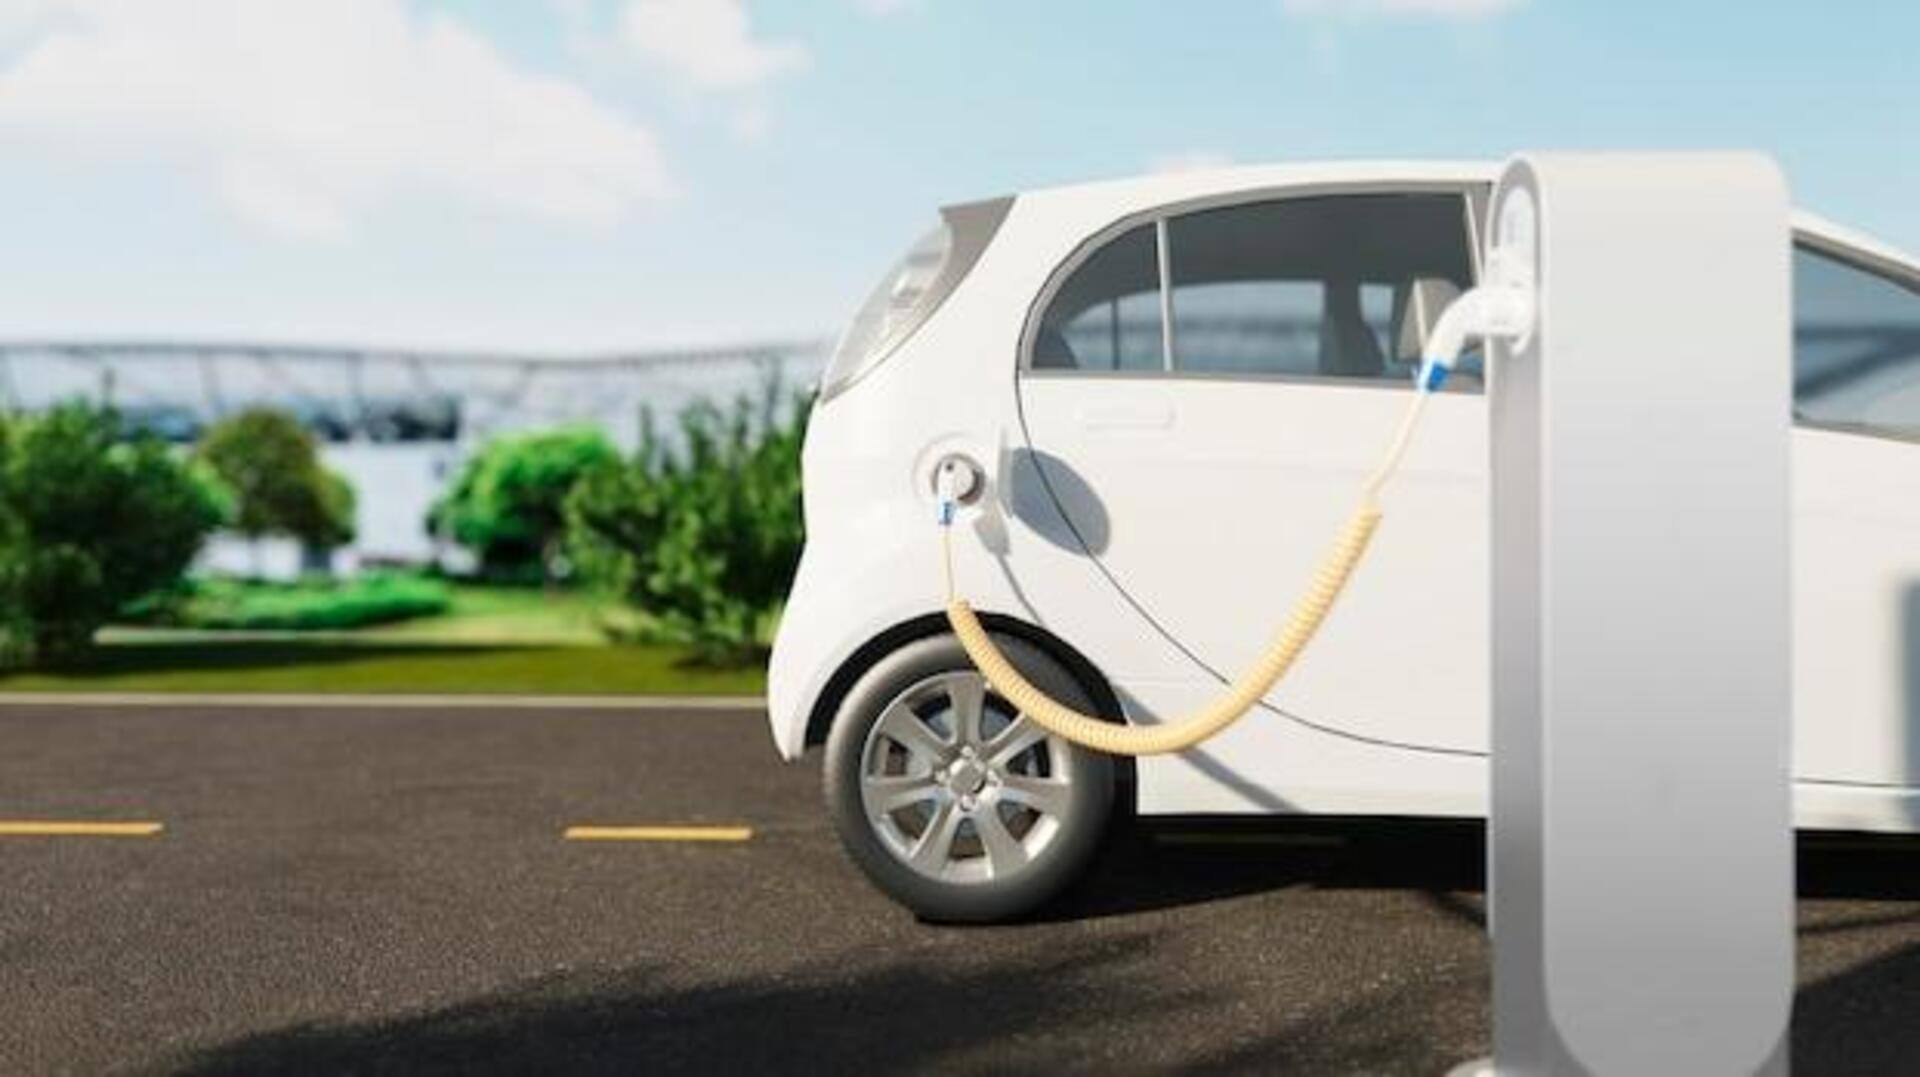 इलेक्ट्रिक वाहन की सुरक्षित चार्जिंग के लिए अपनाएं ये तरीके, कभी नहीं आएगी परेशानी 